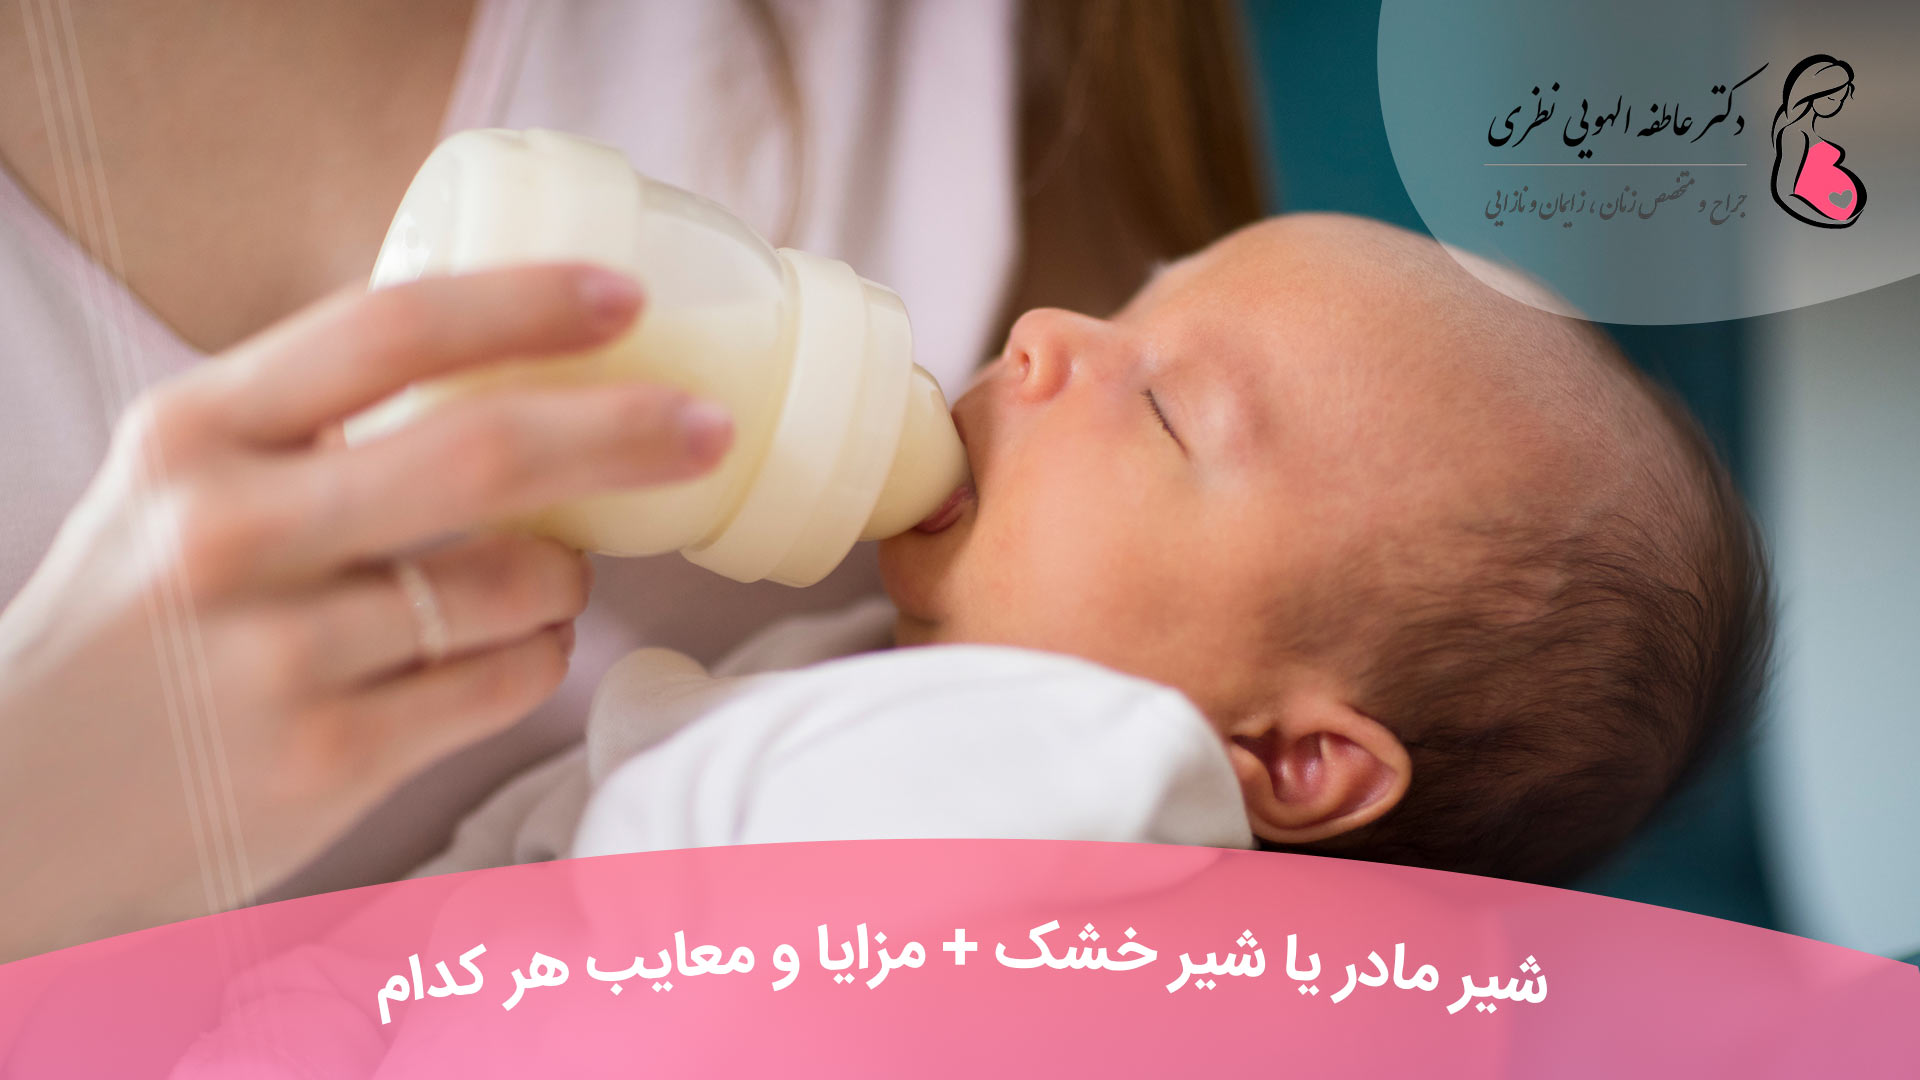 شیر مادر یا شیر خشک + مزایا و معایب هر کدام